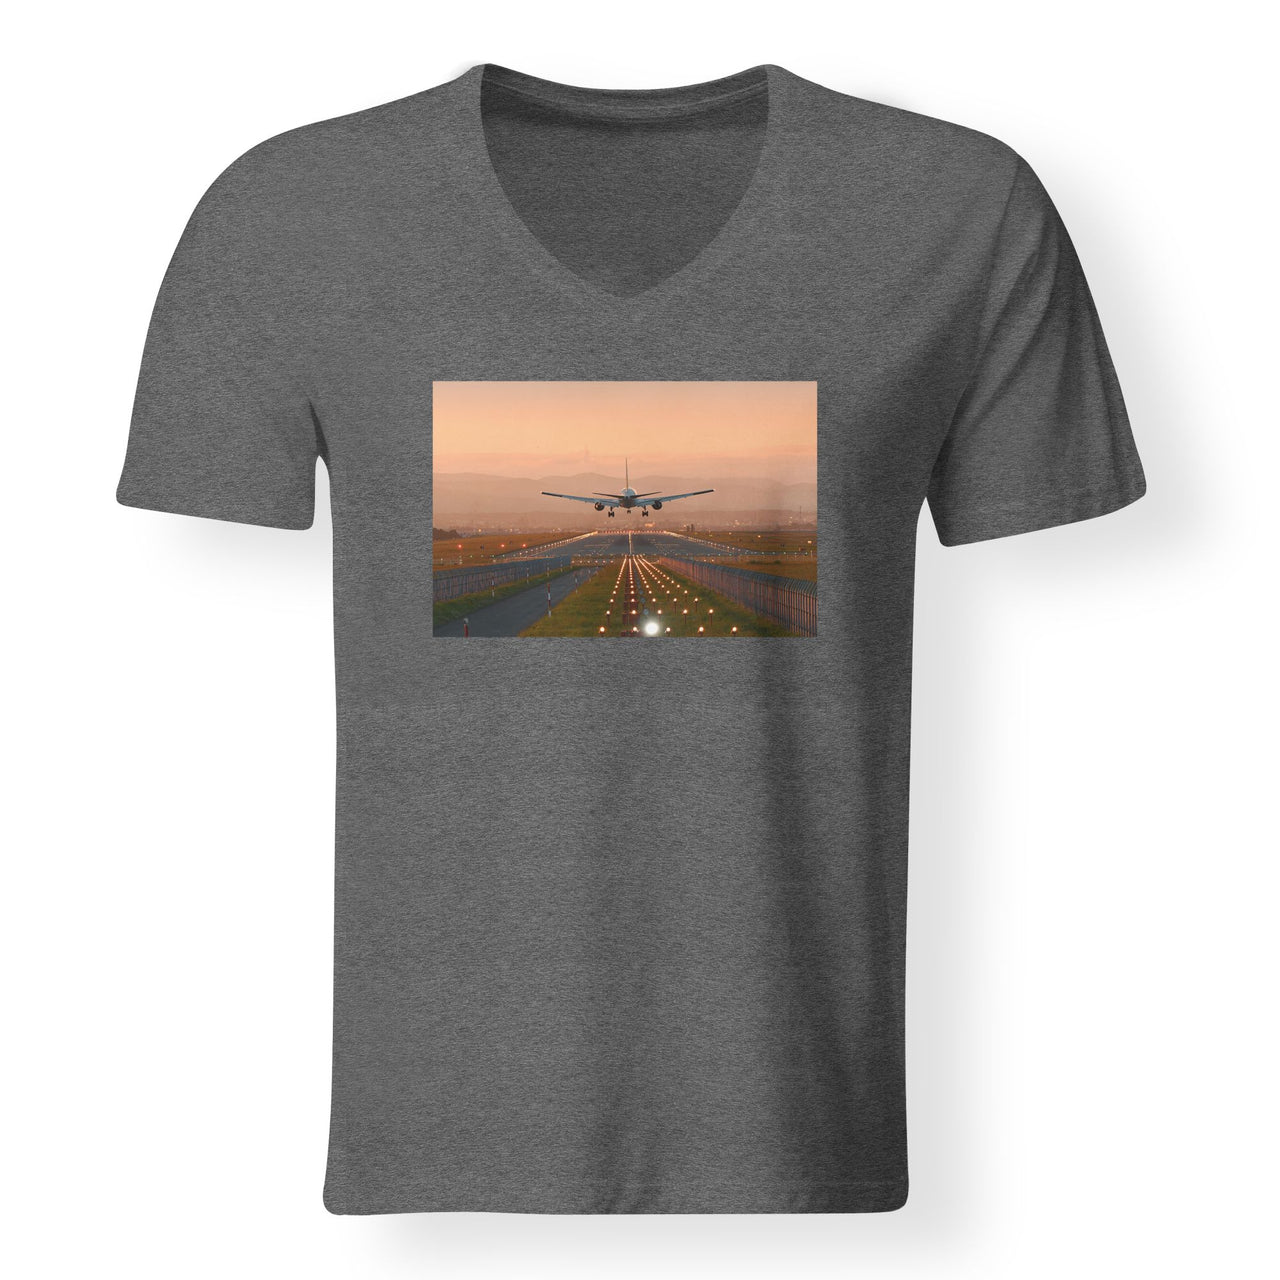 Super Cool Landing During Sunset Designed V-Neck T-Shirts